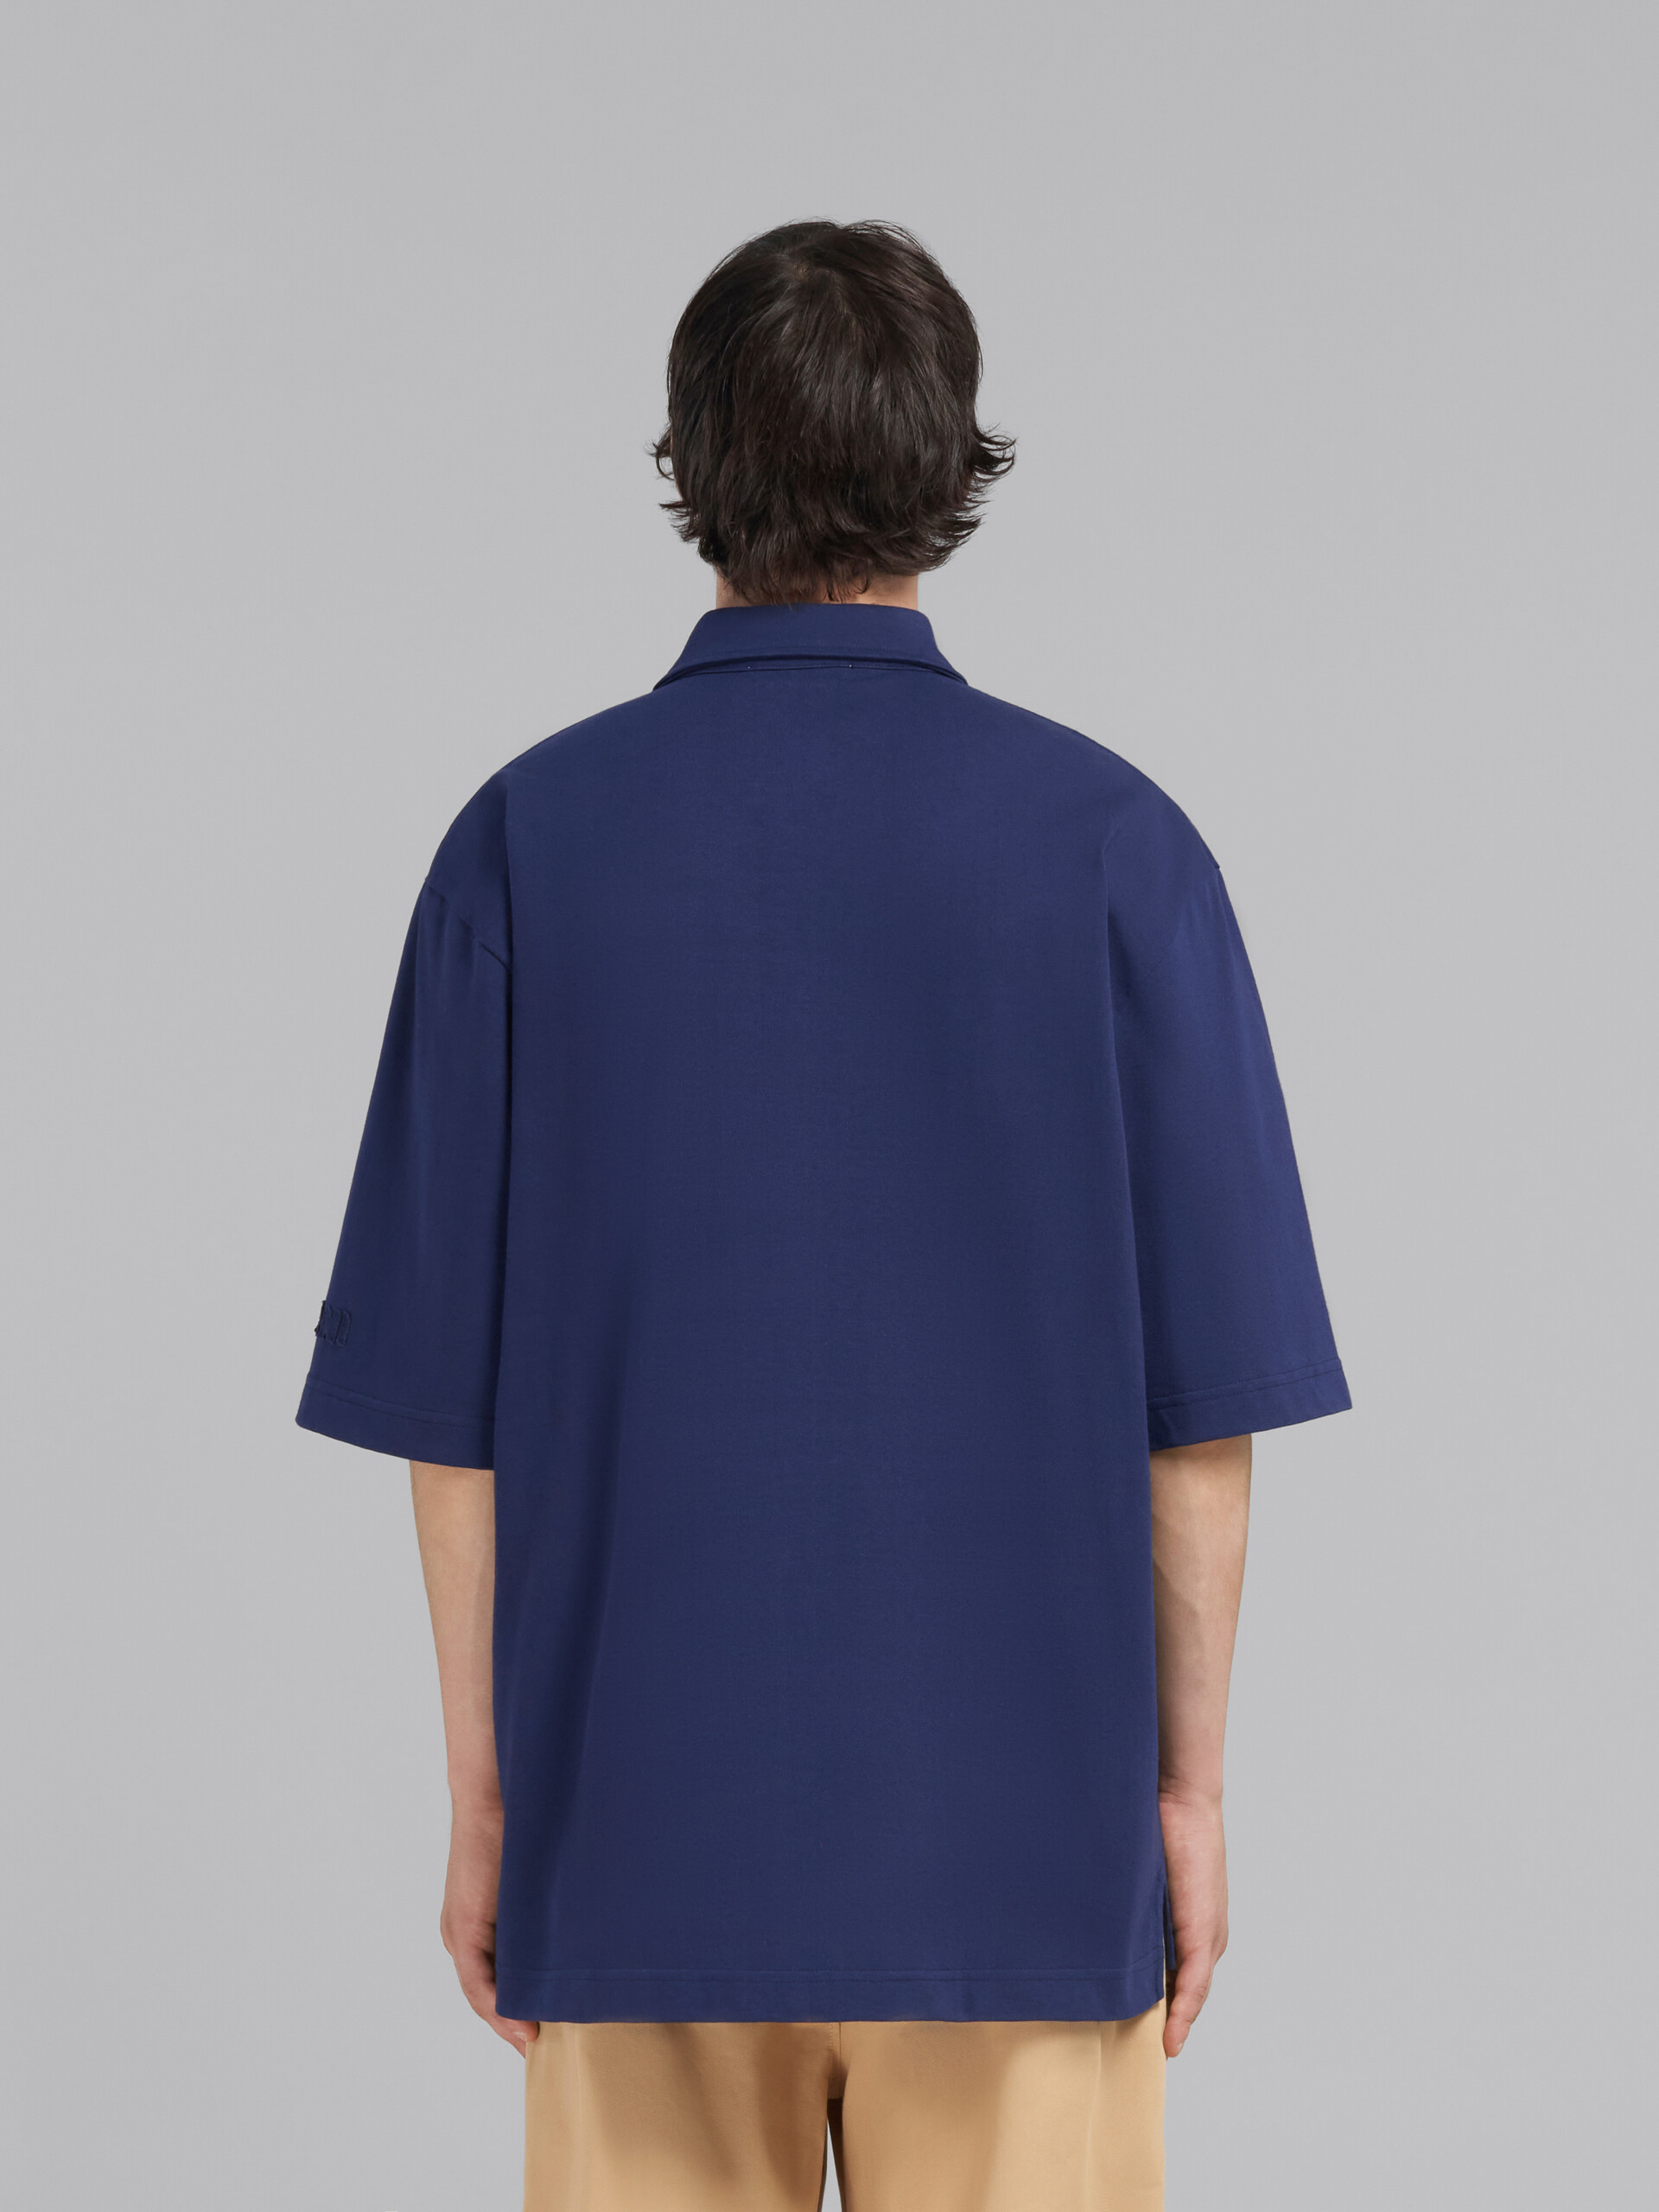 Blaues Oversize-Polohemd aus Bio-Baumwolle mit Marni-Aufnähern - Polohemden - Image 3